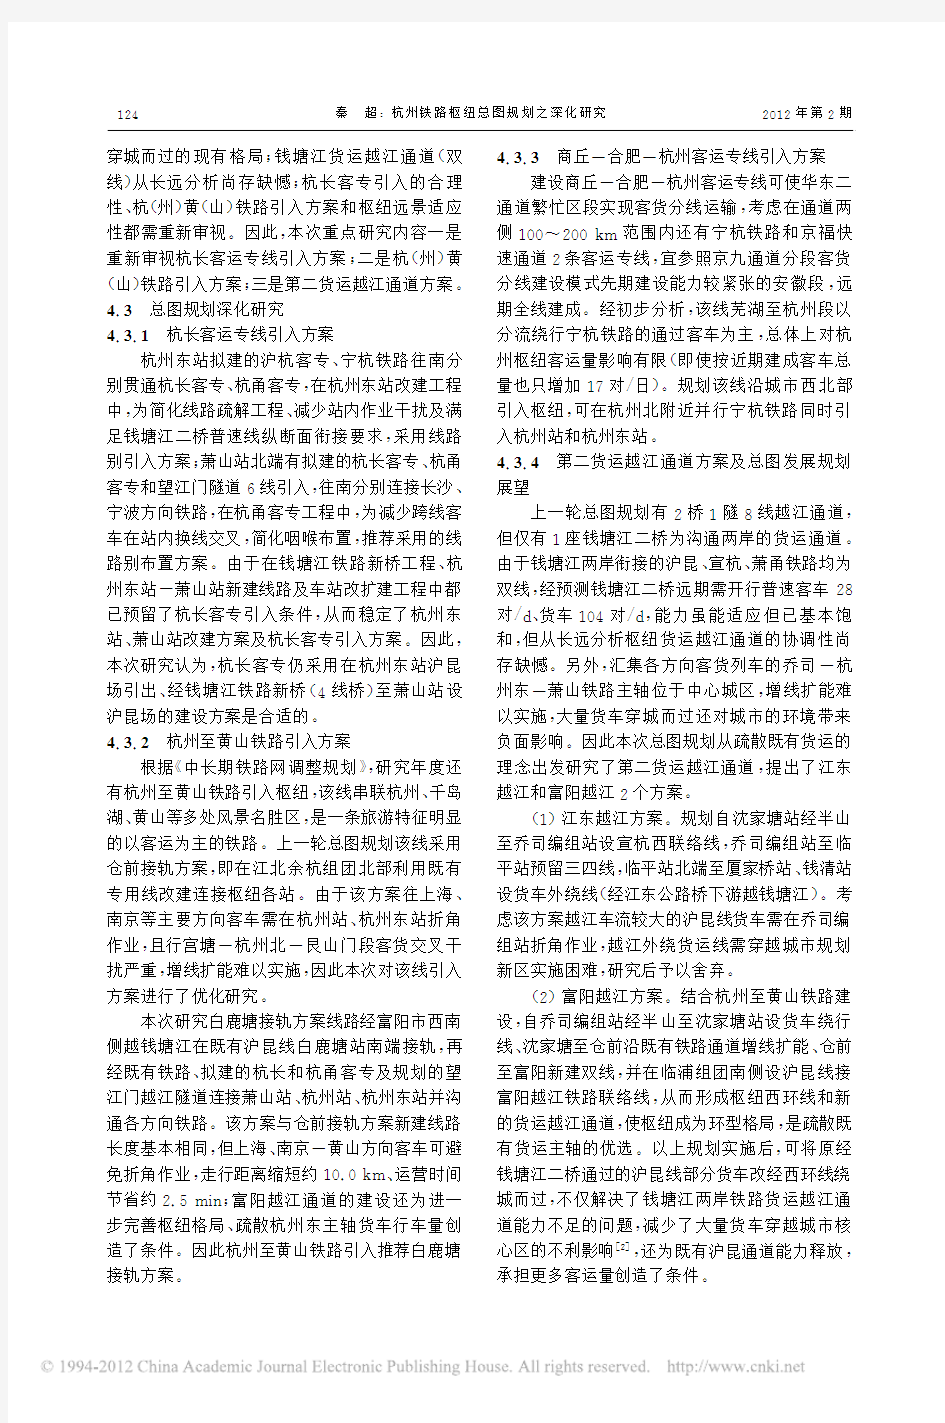 杭州铁路枢纽总图规划之深化研究